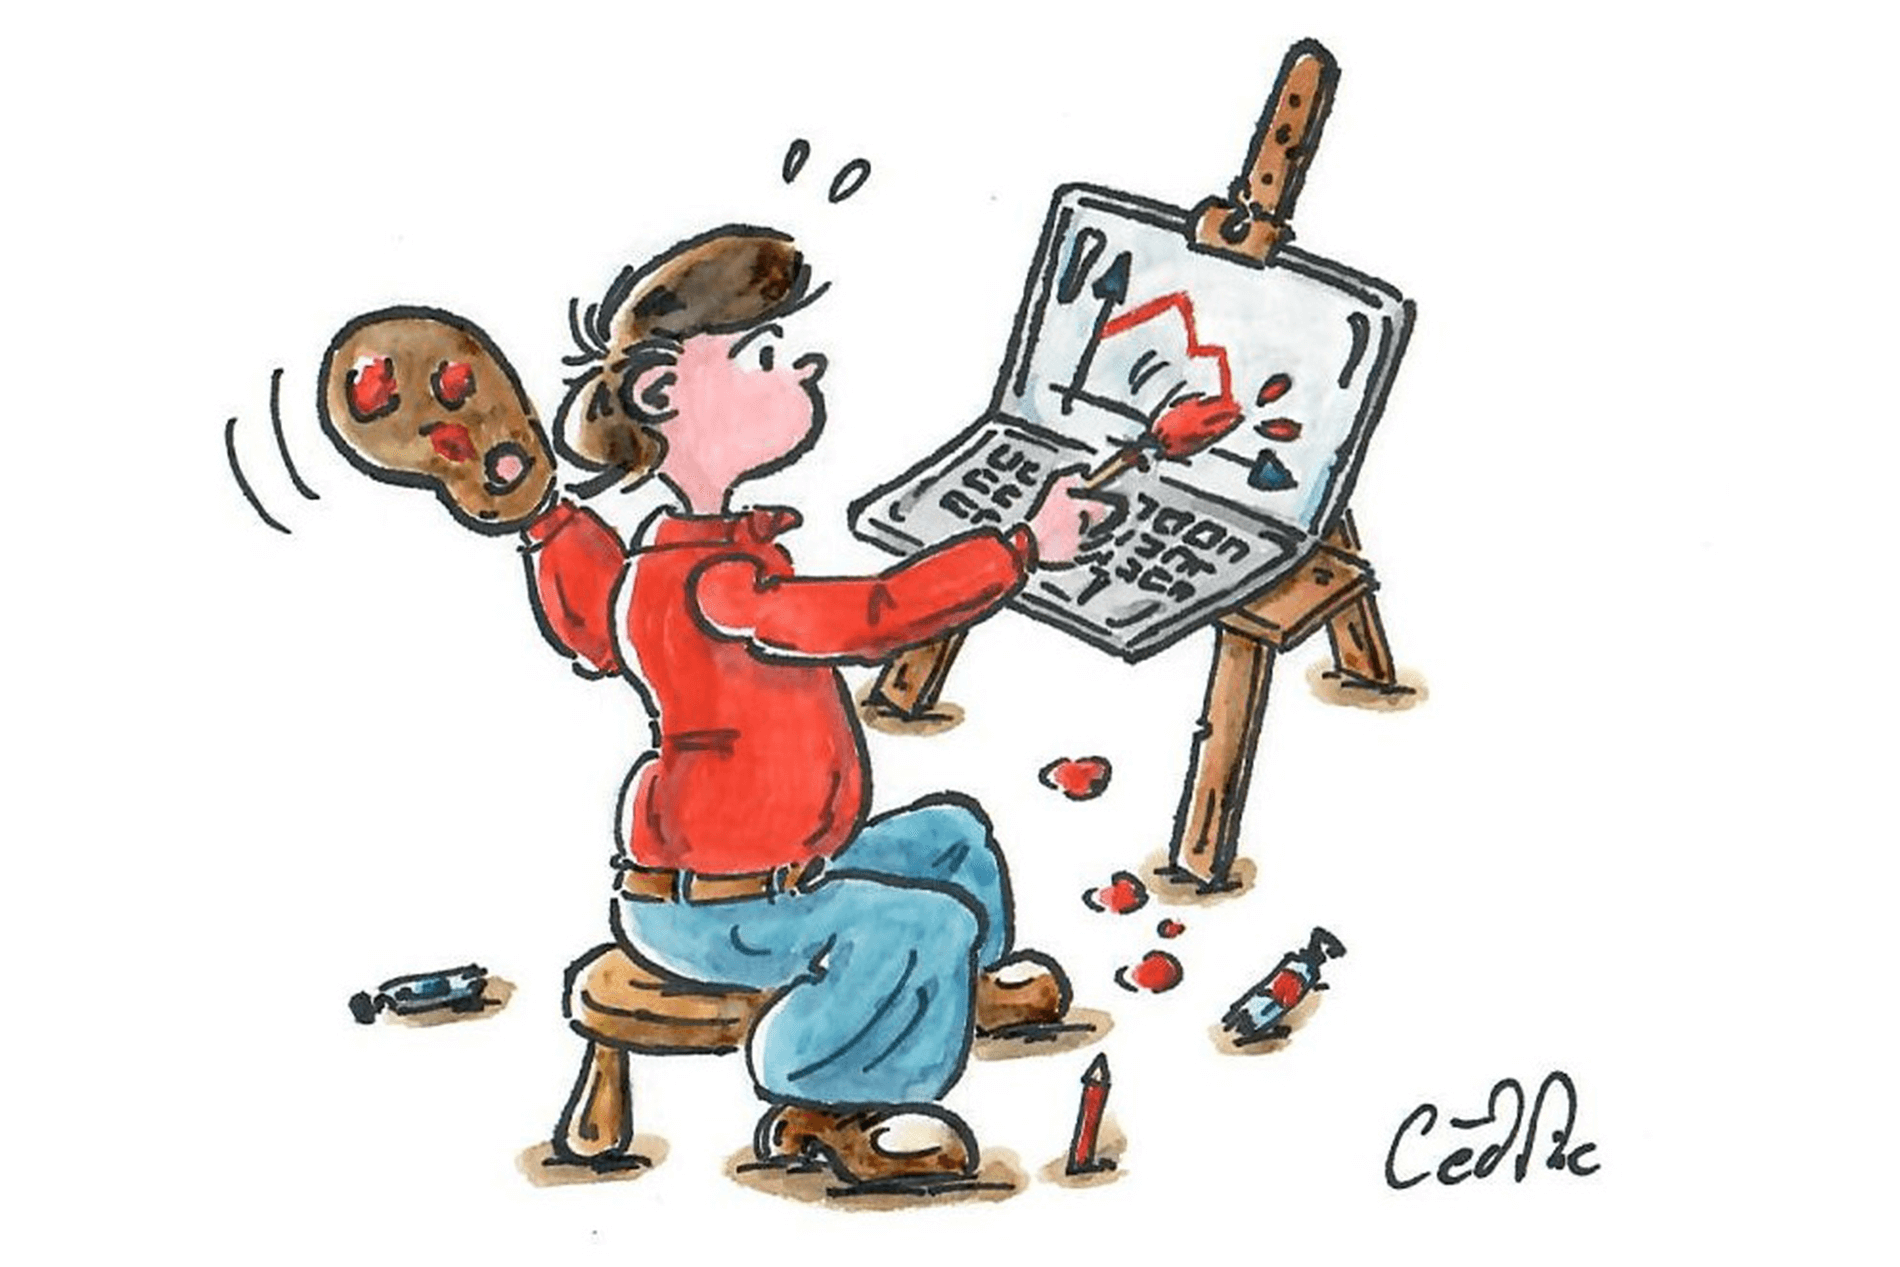 Dessin: l'artiste se représente en train de peindre par dessus l'écran de son ordinateur portable.